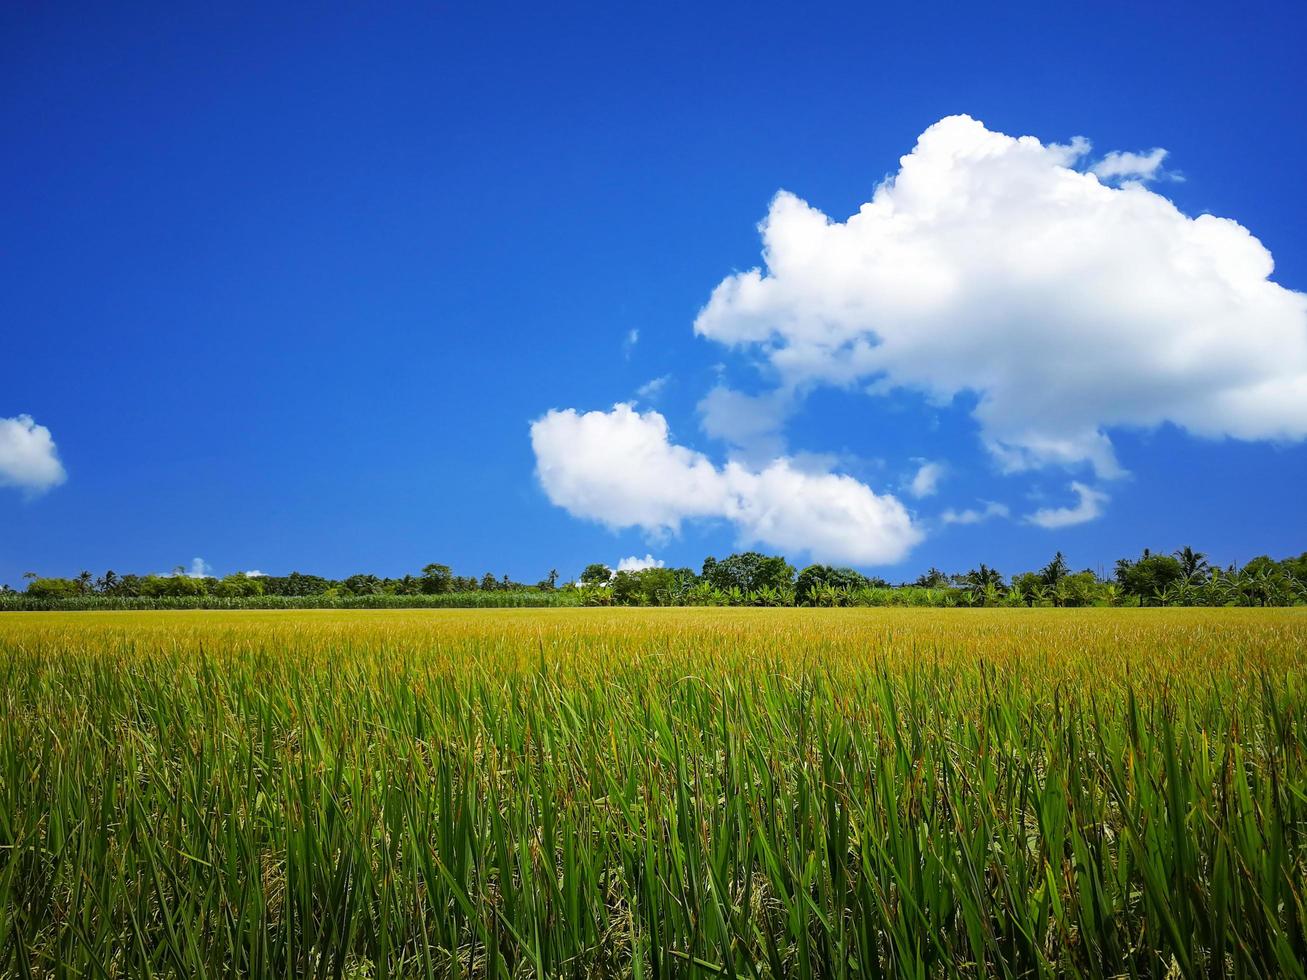 rizières spacieuses, tiges de riz, jaune d'or. feuilles de riz vert vif. le ciel est bleu vif et les nuages blancs. rizières en thaïlande photo